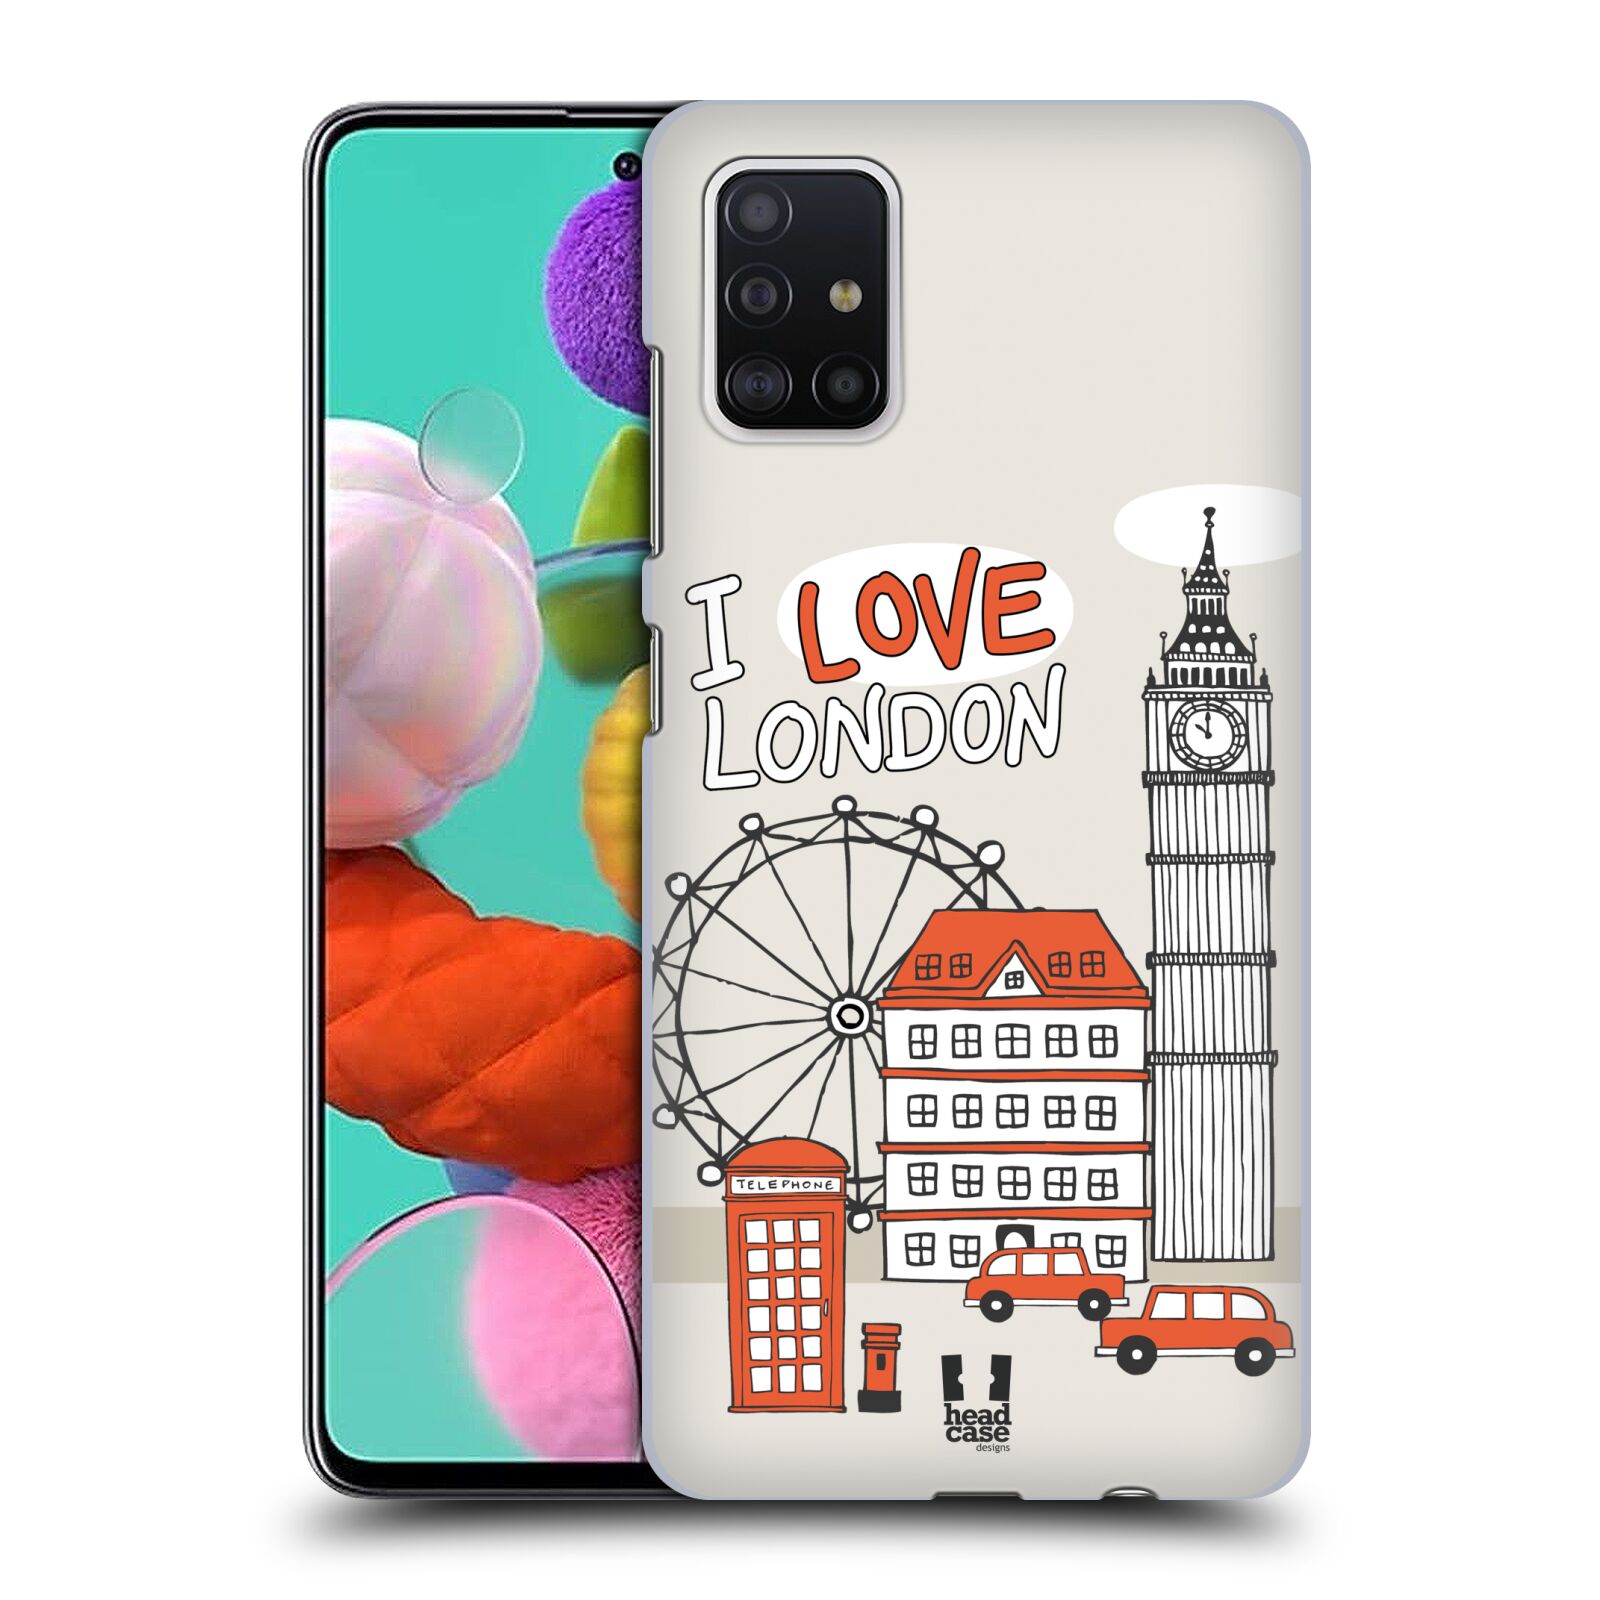 Pouzdro na mobil Samsung Galaxy A51 - HEAD CASE - vzor Kreslená městečka ČERVENÁ, Anglie, Londýn, I LOVE LONDON